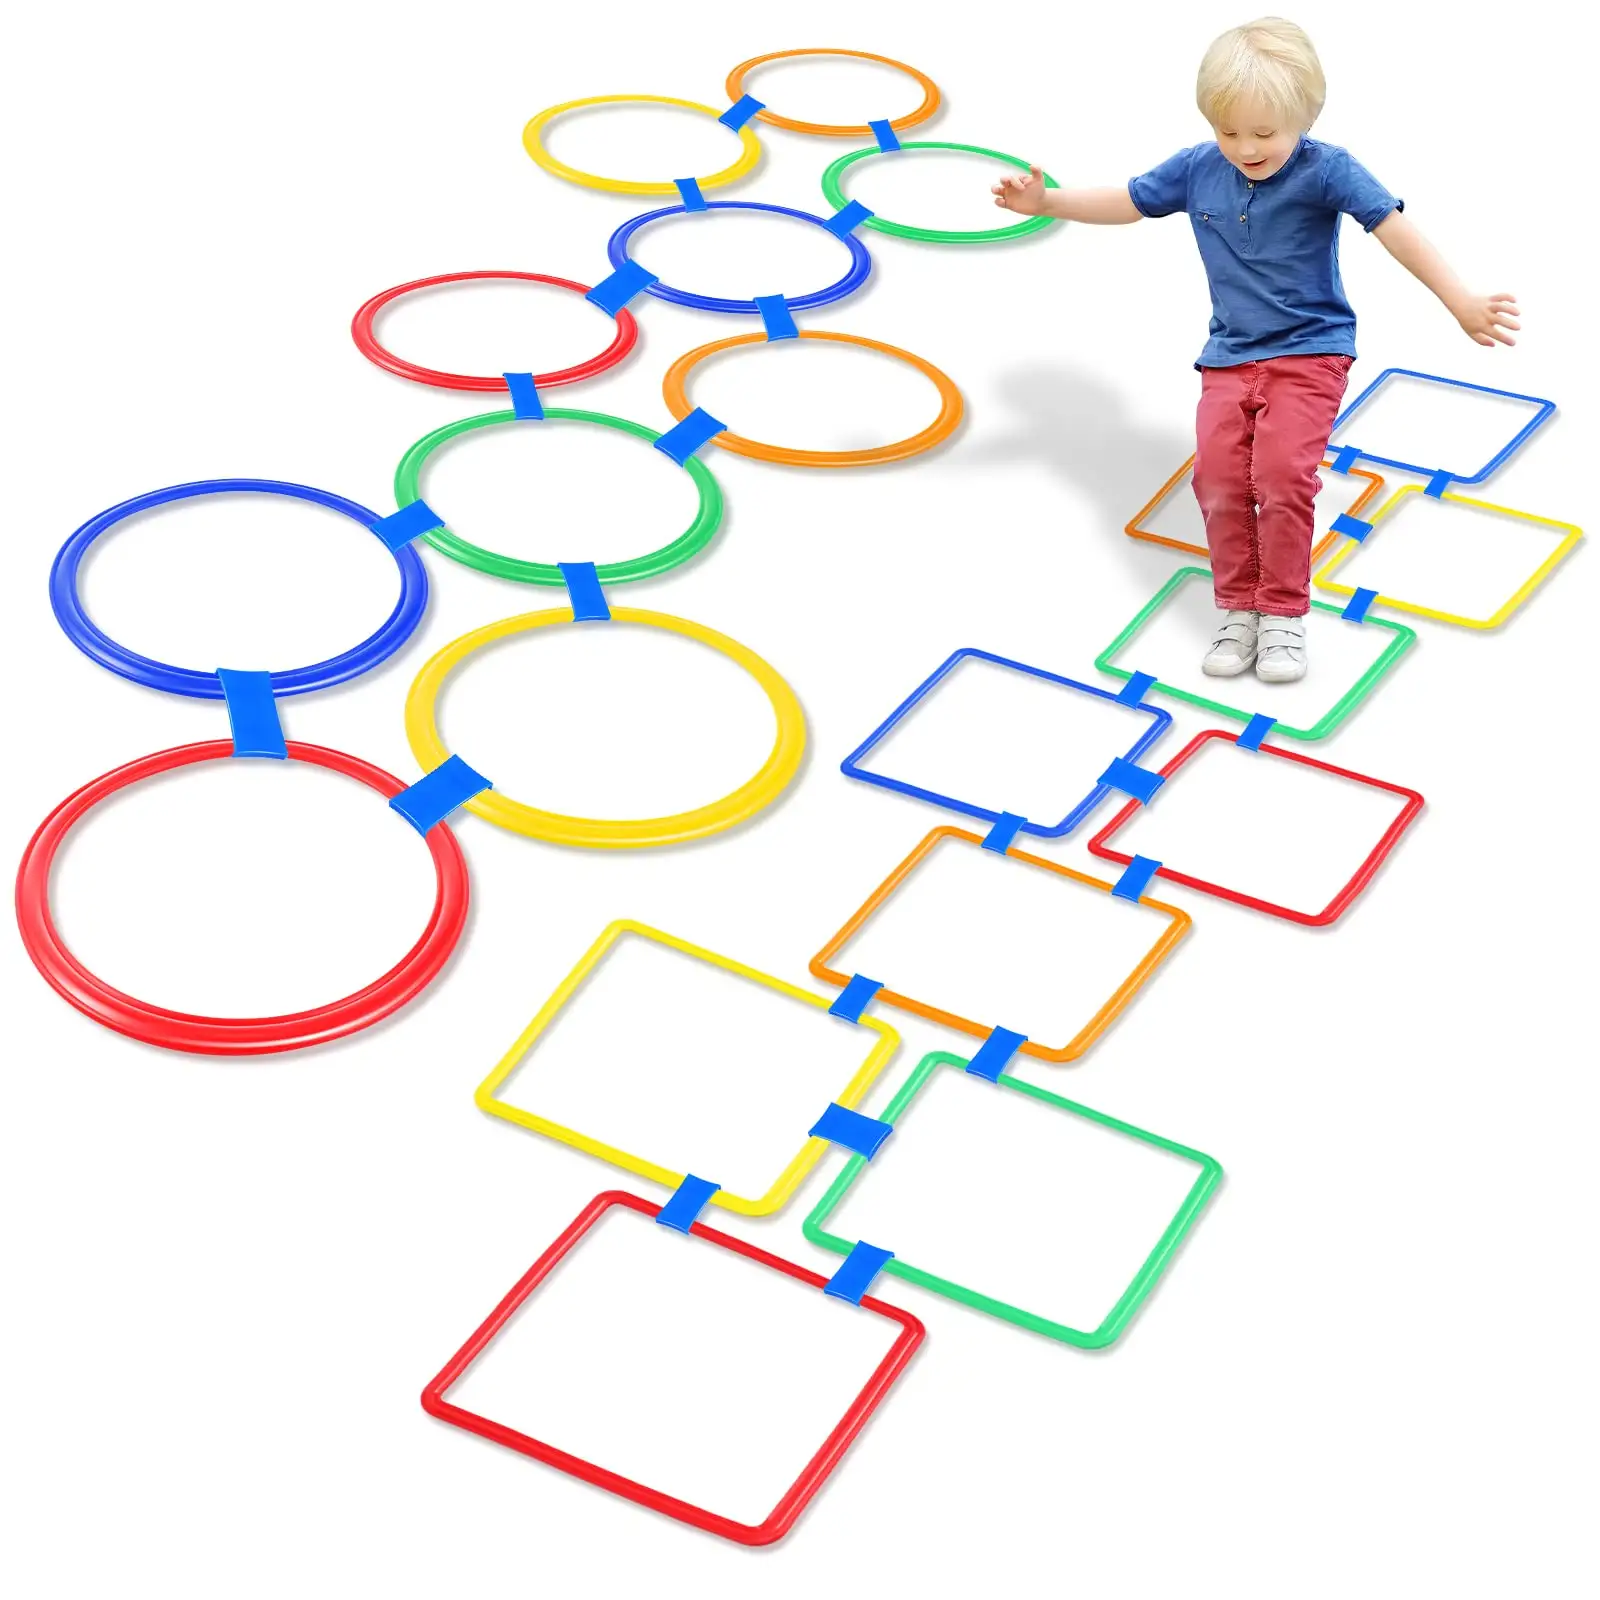 Hop scotch Ring Spiel Hop scotch Circle Spiel Spielzeug für Kinder, bunte weiche Kunststoff Agility Circle, sensorische Trainings geräte